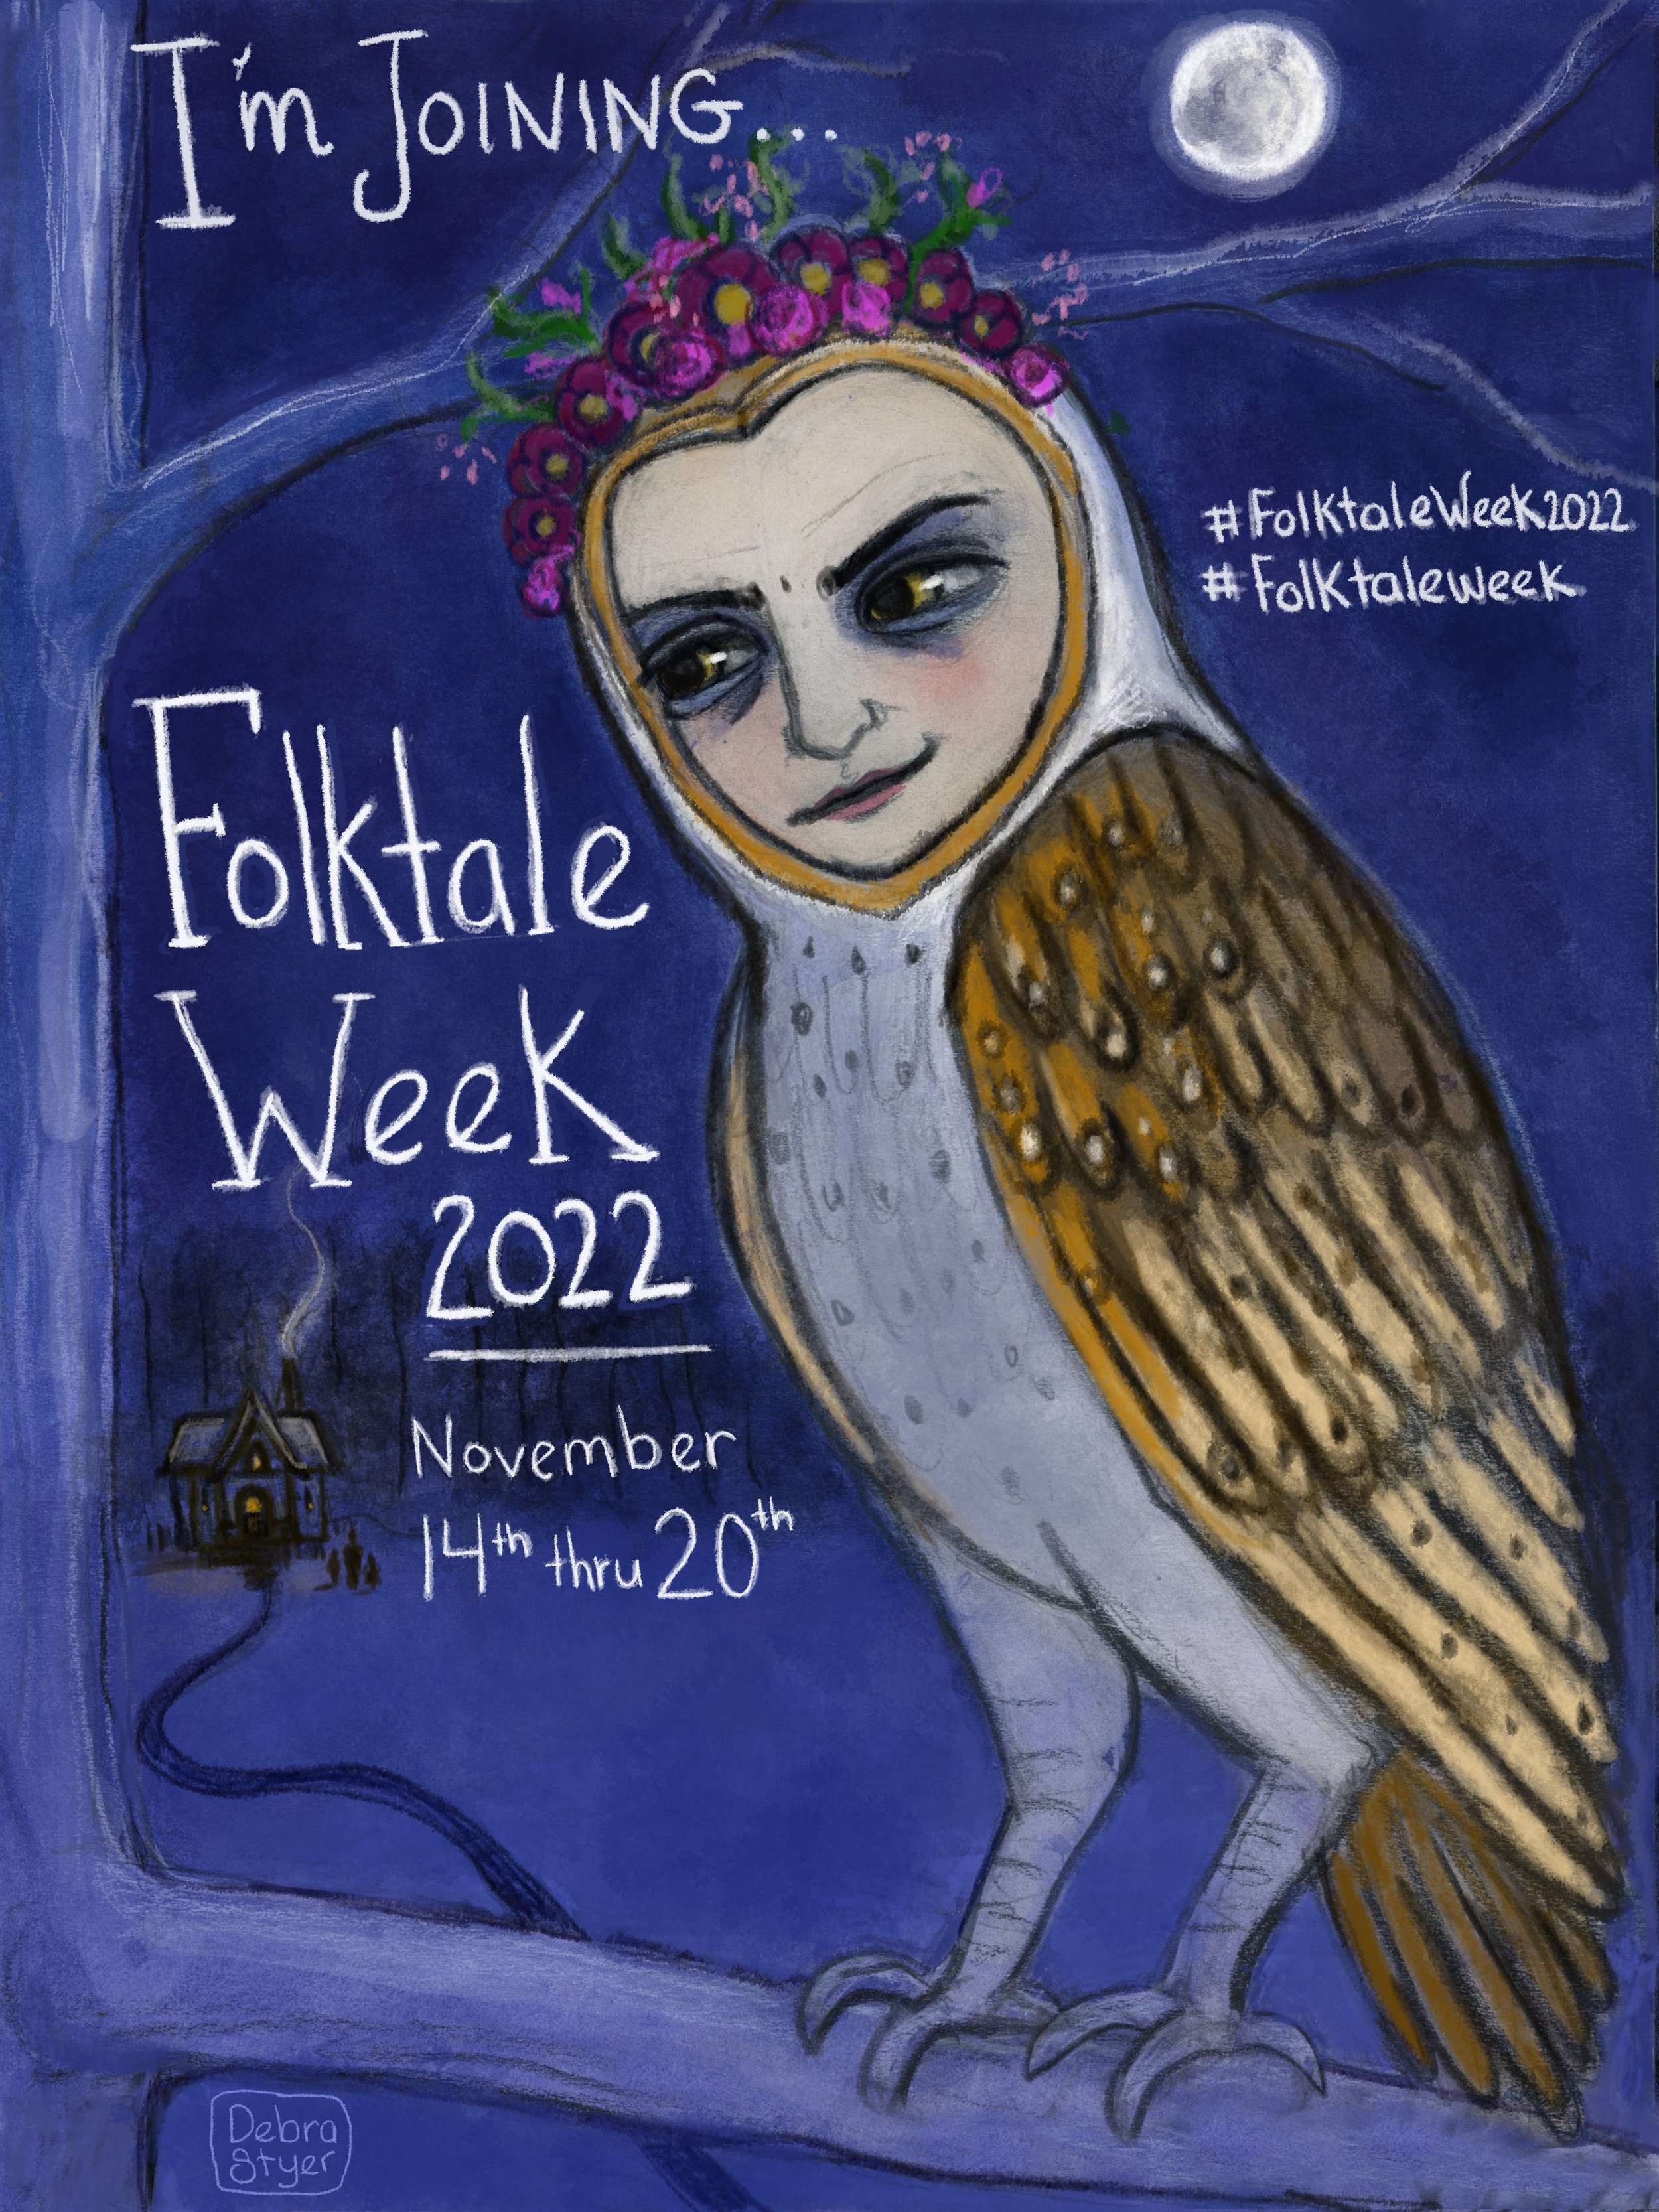 Folktale Week: I'm Joining